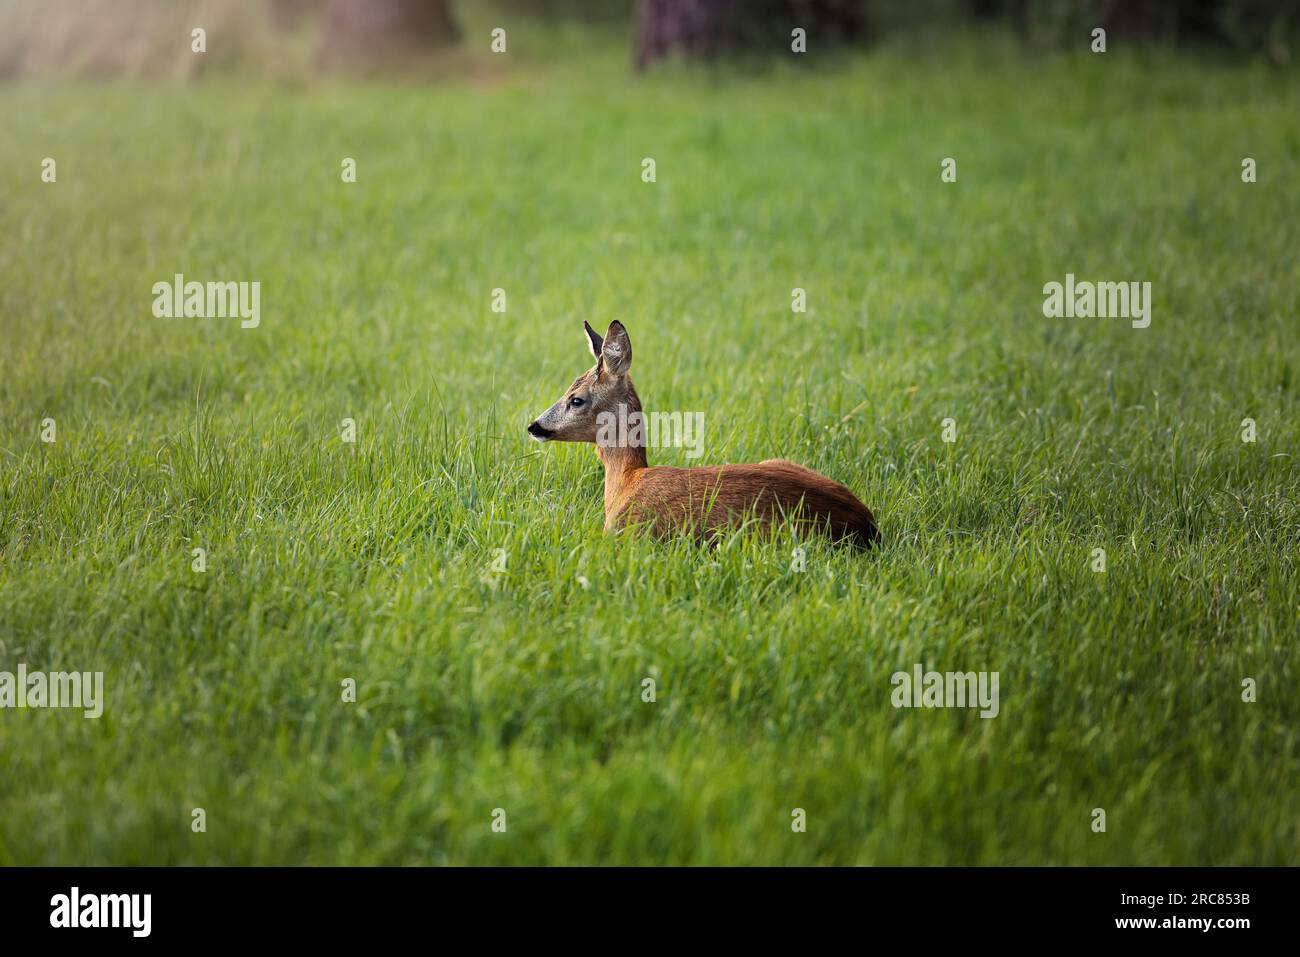 Ciervos descansando, ciervos dormidos, en un campo verde con un bosque en el fondo en Alemania, Europa Foto de stock